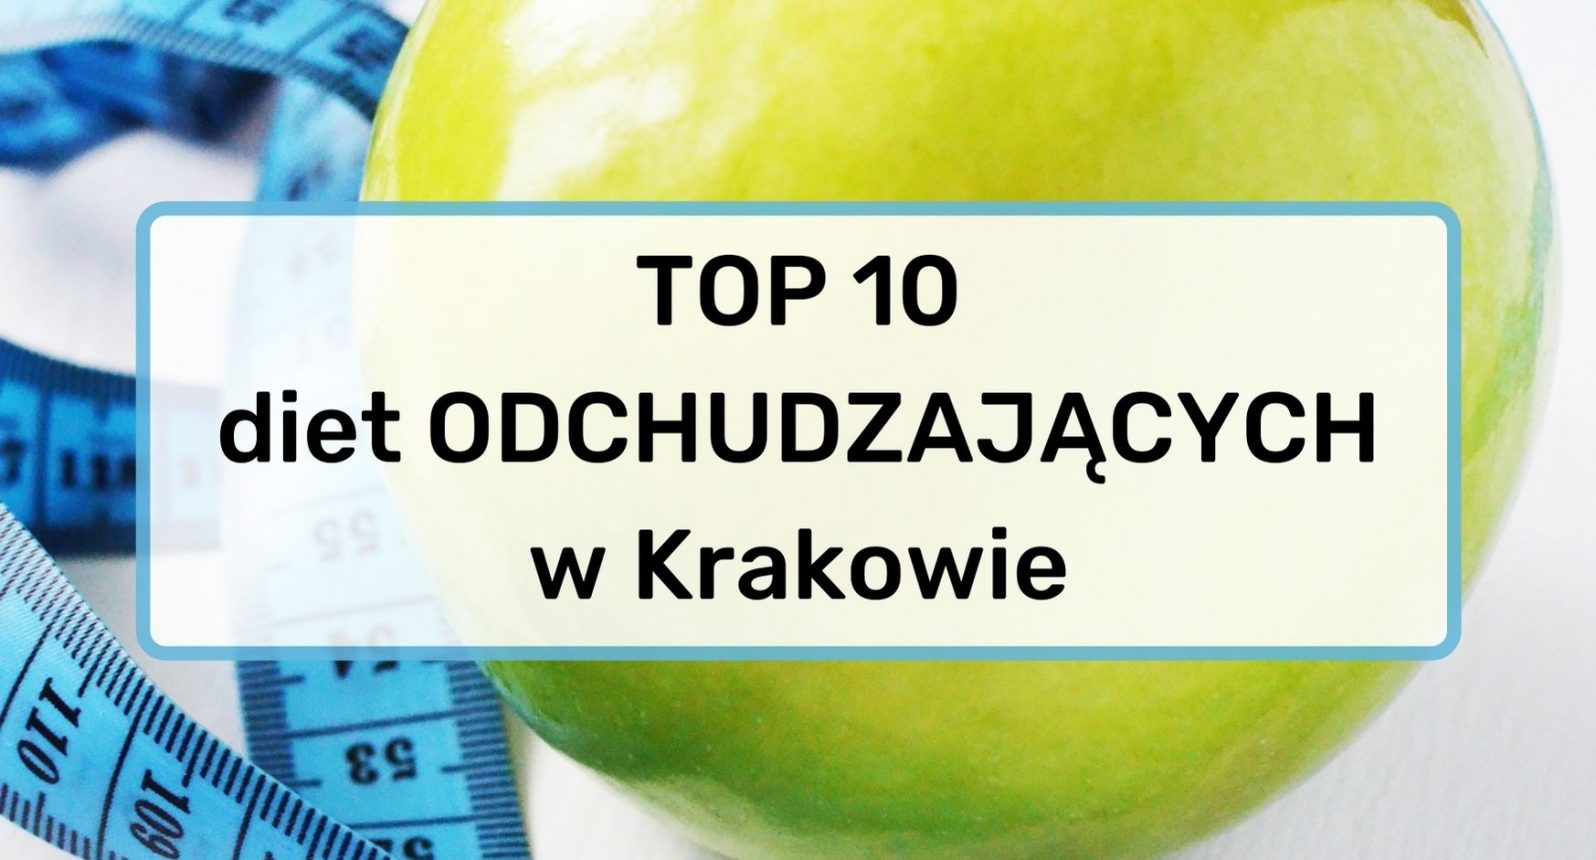 Najlepsza dieta odchudzająca w Krakowie - TOP 10 cateringów dietetycznych